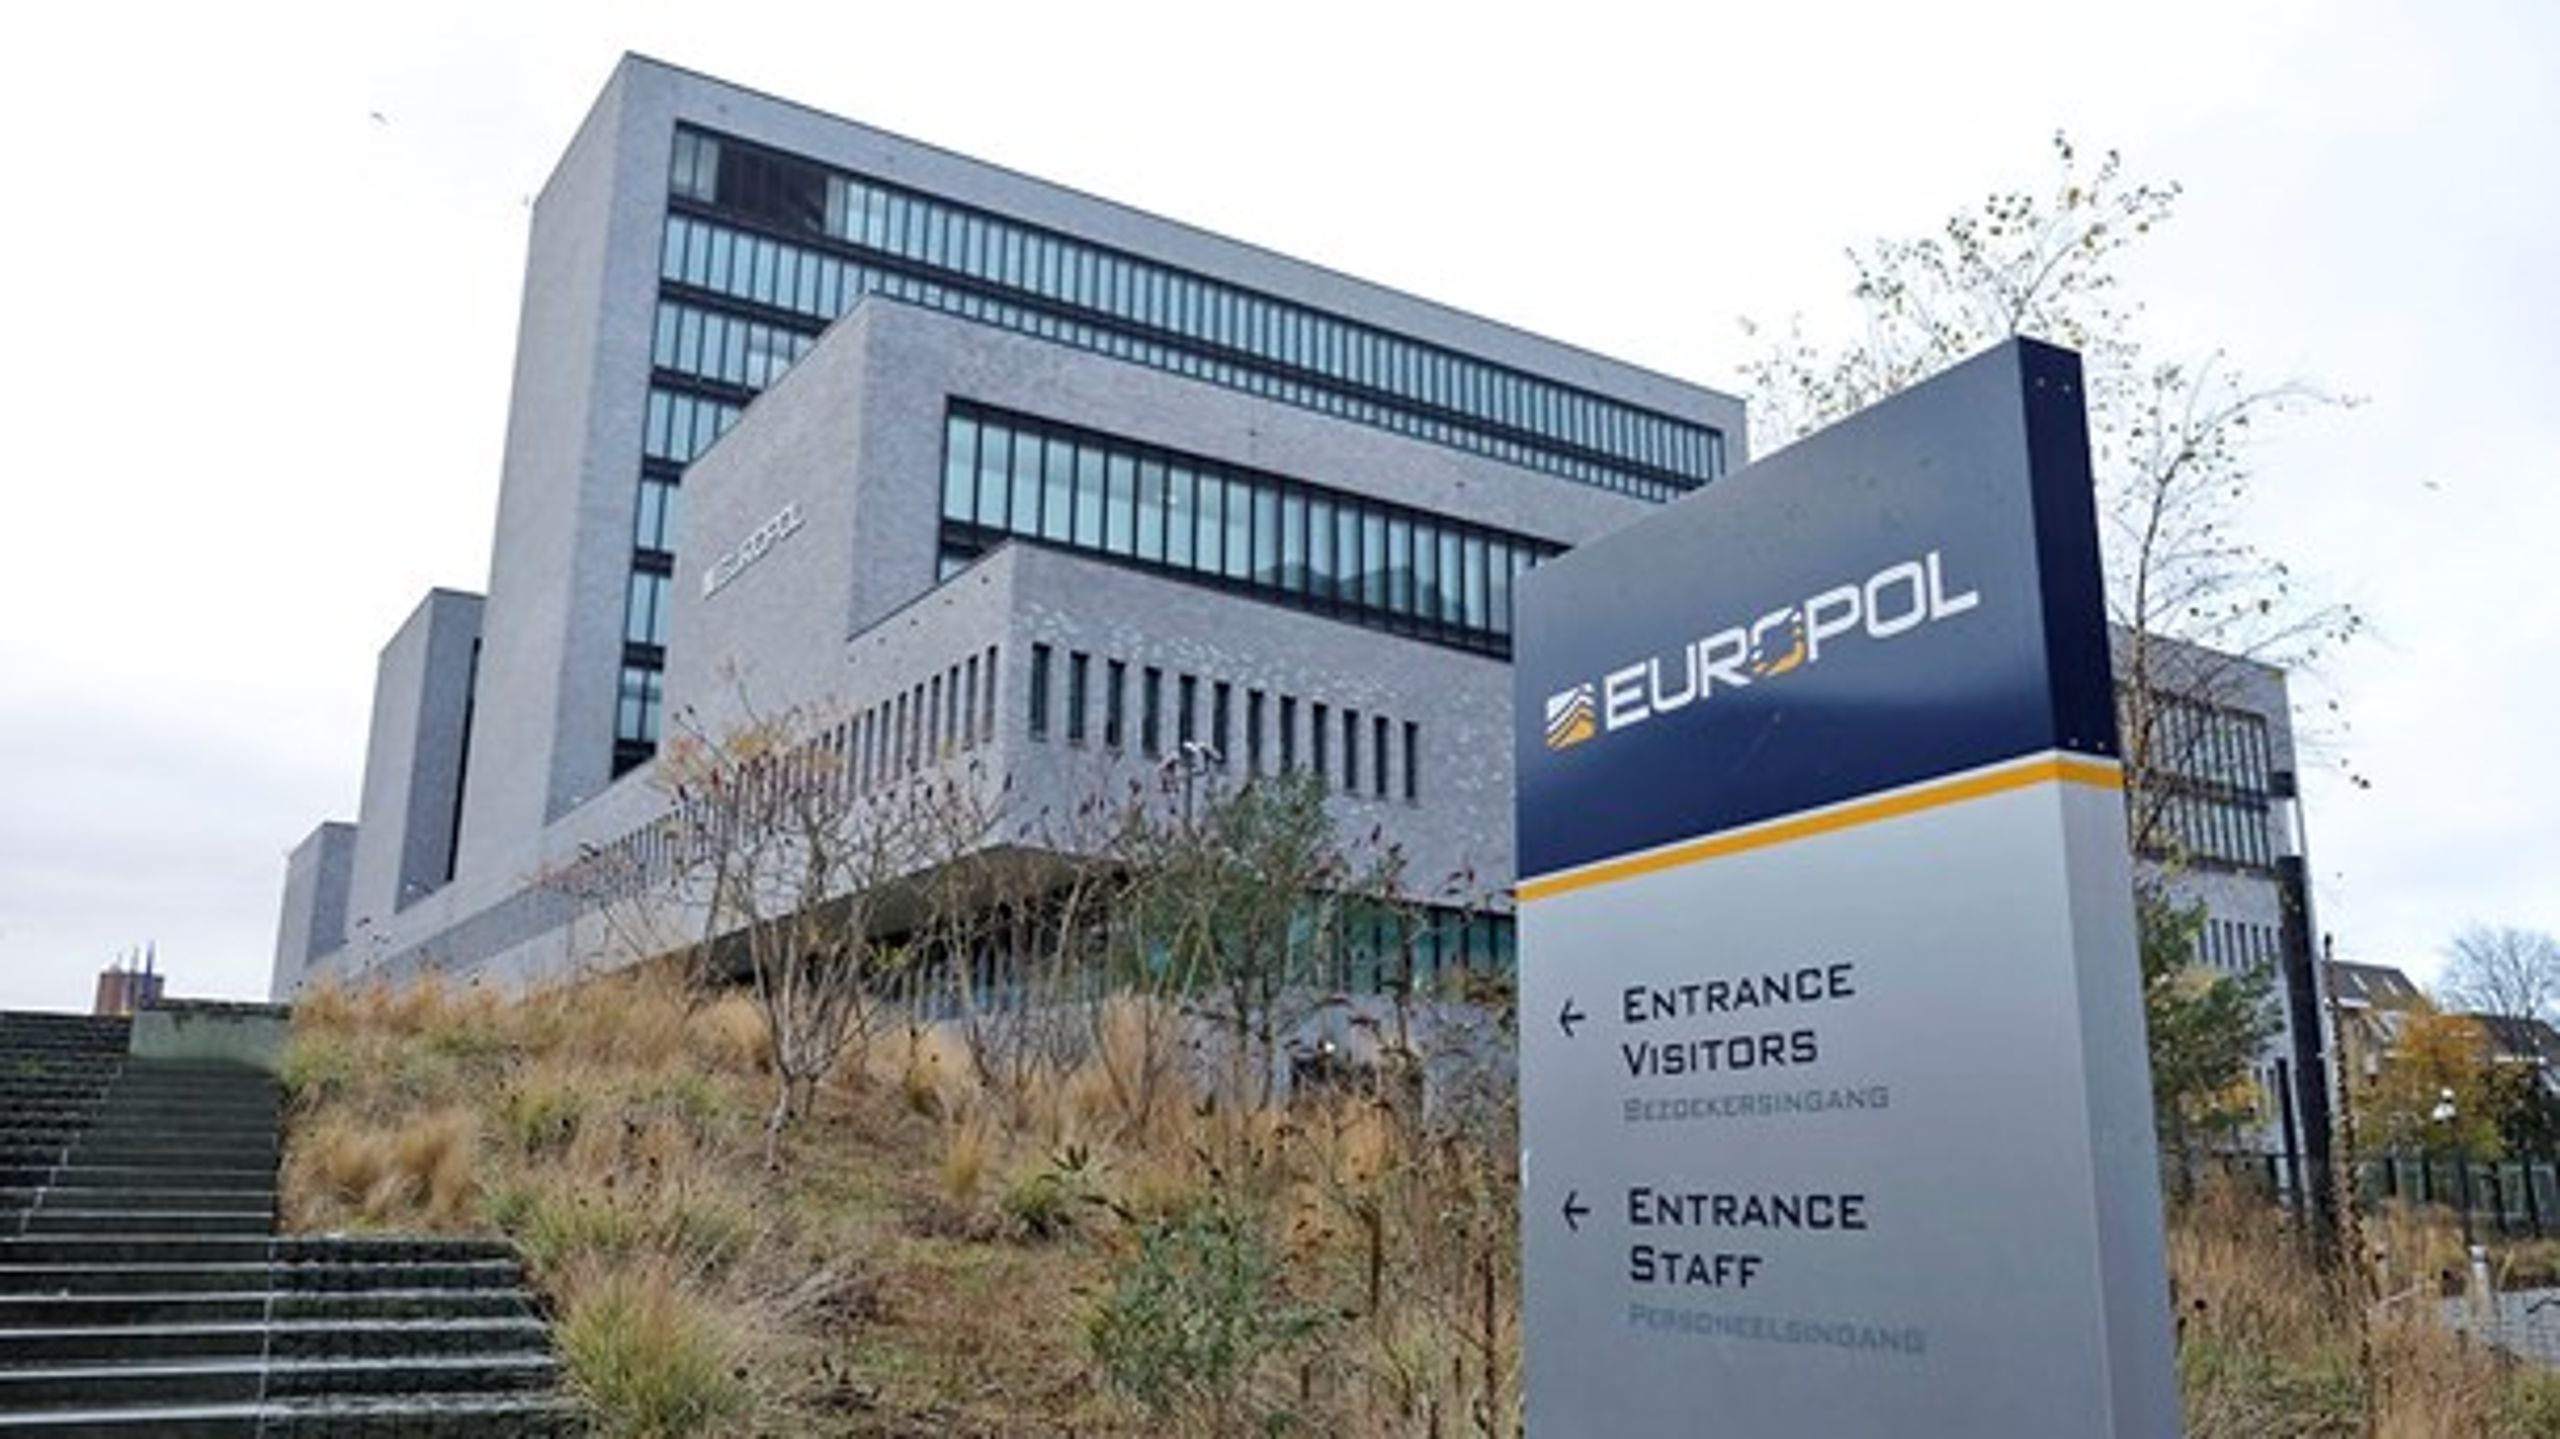 Danmark har&nbsp;ikke længere&nbsp;mulighed for at påvirke&nbsp;Europol og&nbsp;har dermed mistet indflydelse på et af landets centrale områder.<br>